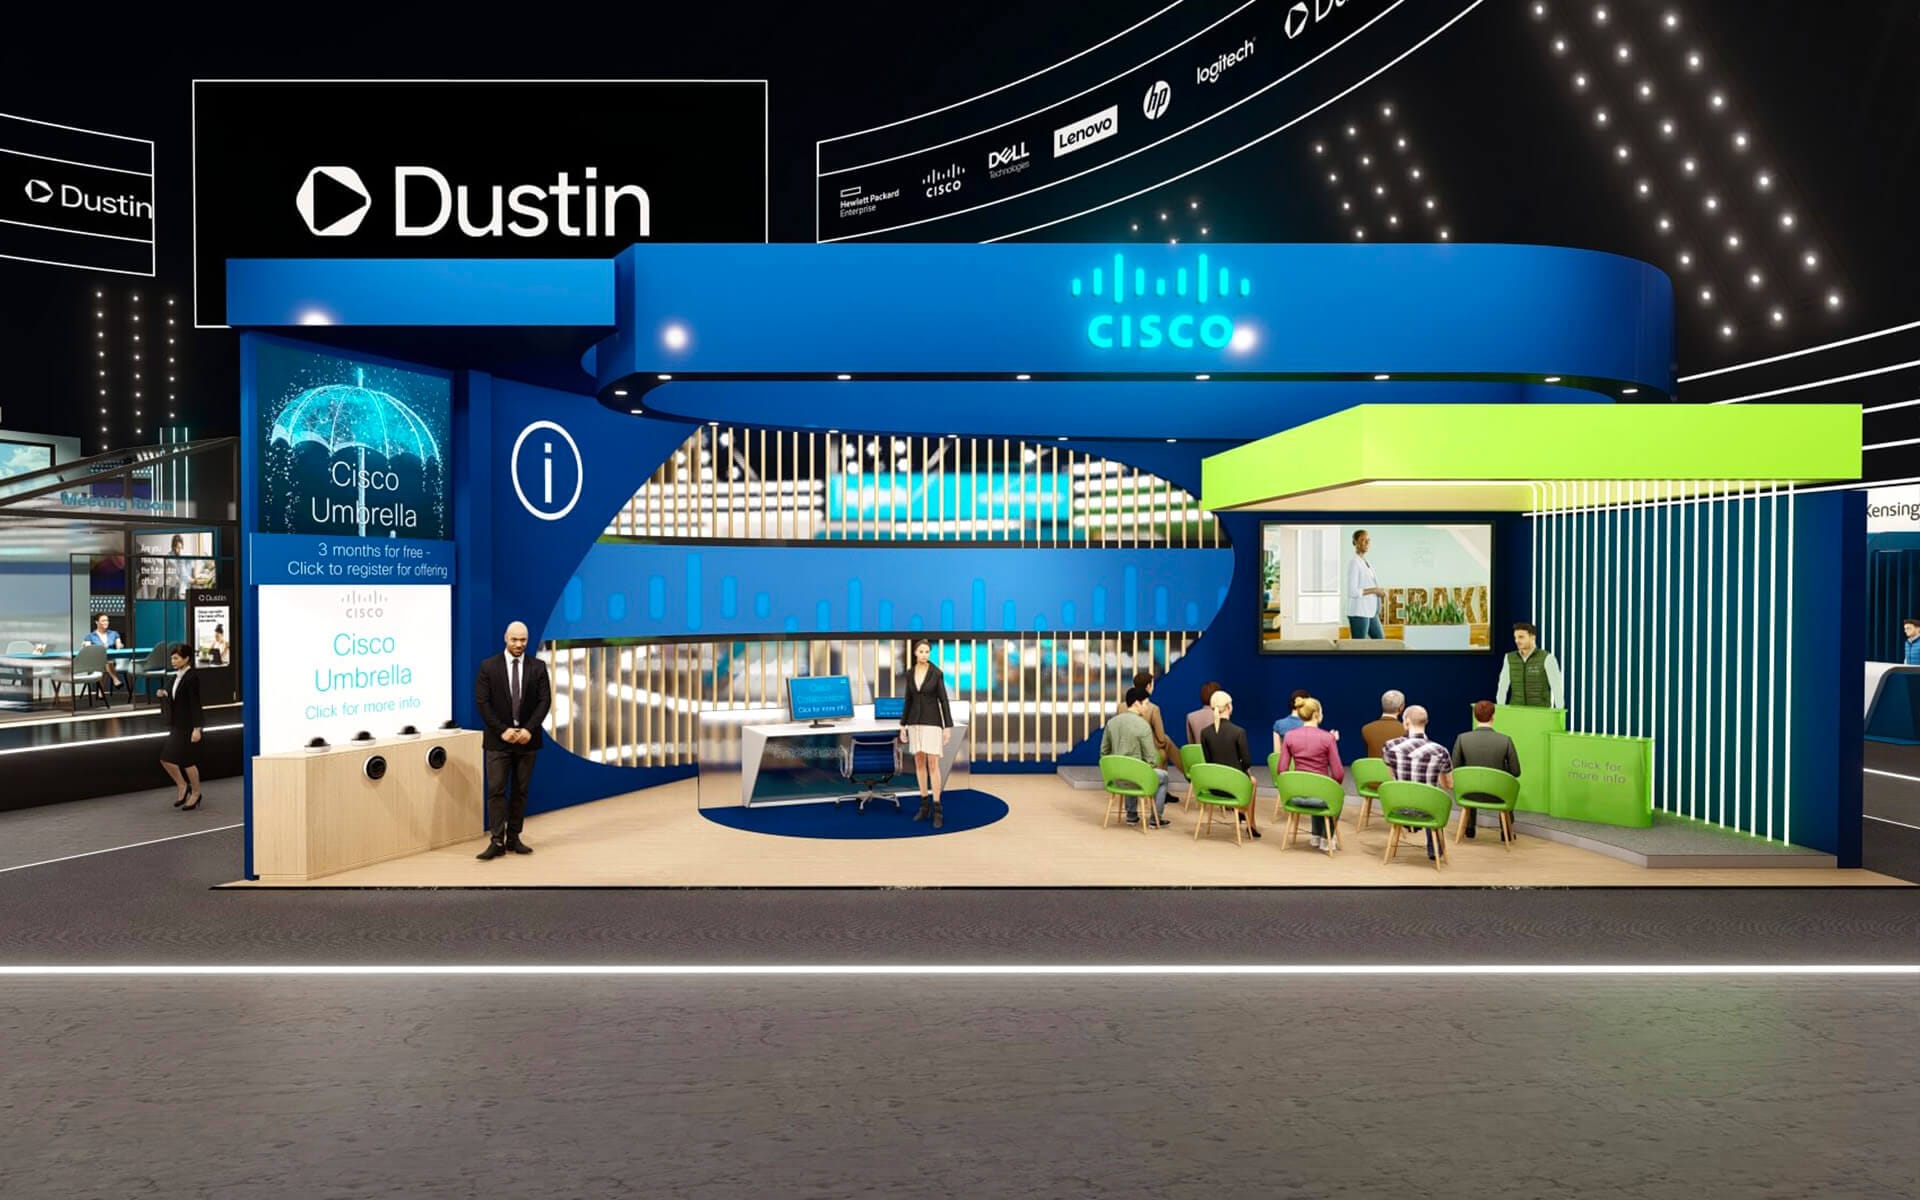 Virtuell 3d monter för Cisco på Dustin Expo Connected